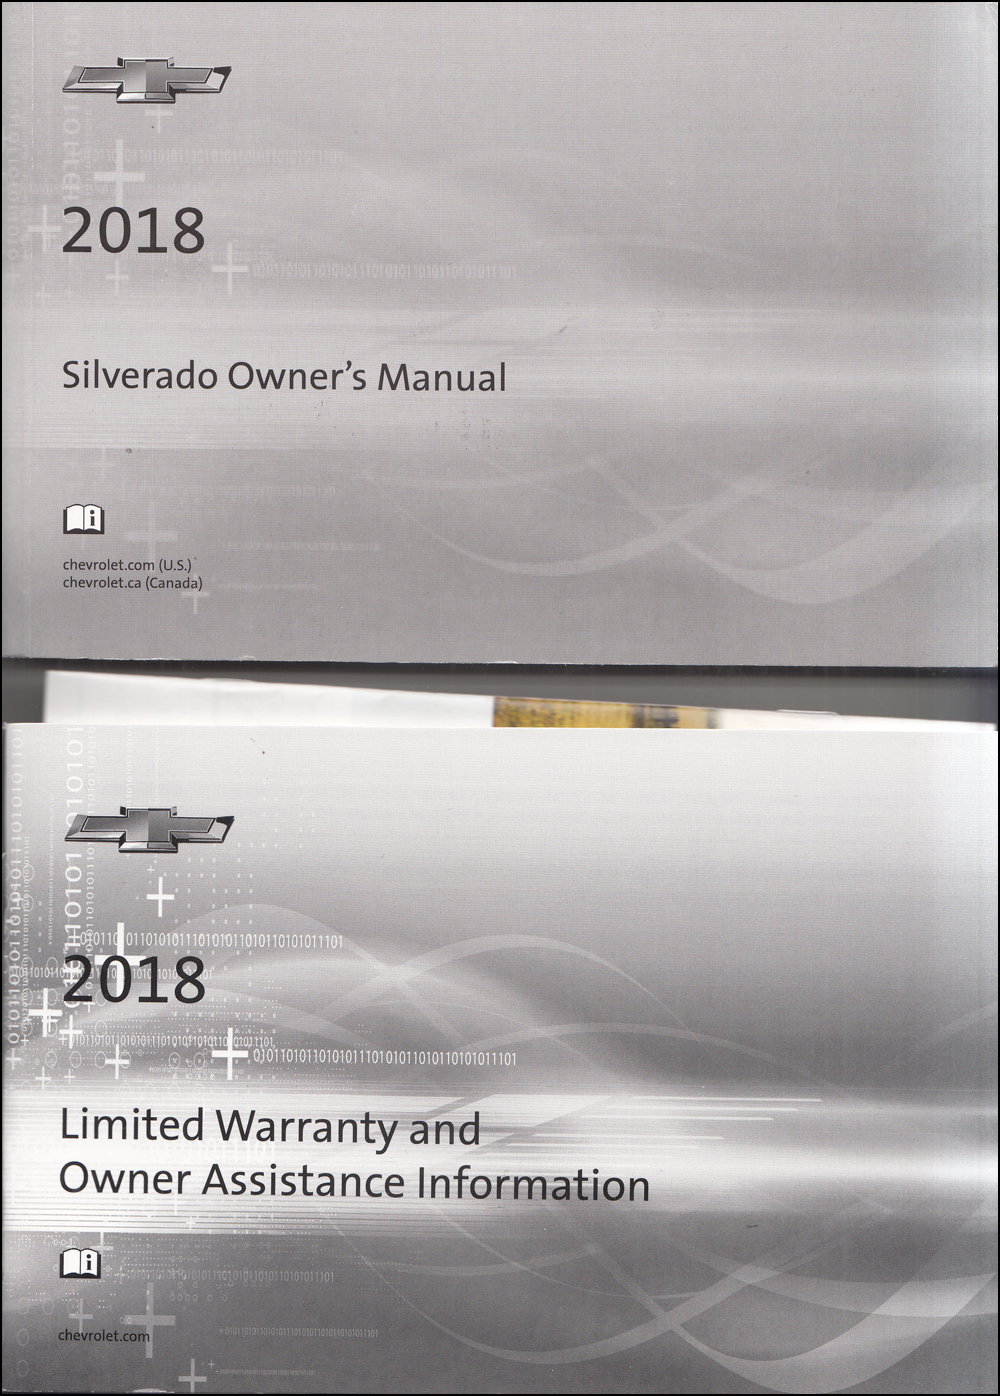 2002 Silverado & Sierra Repair Manual Original 5 Volume Set 